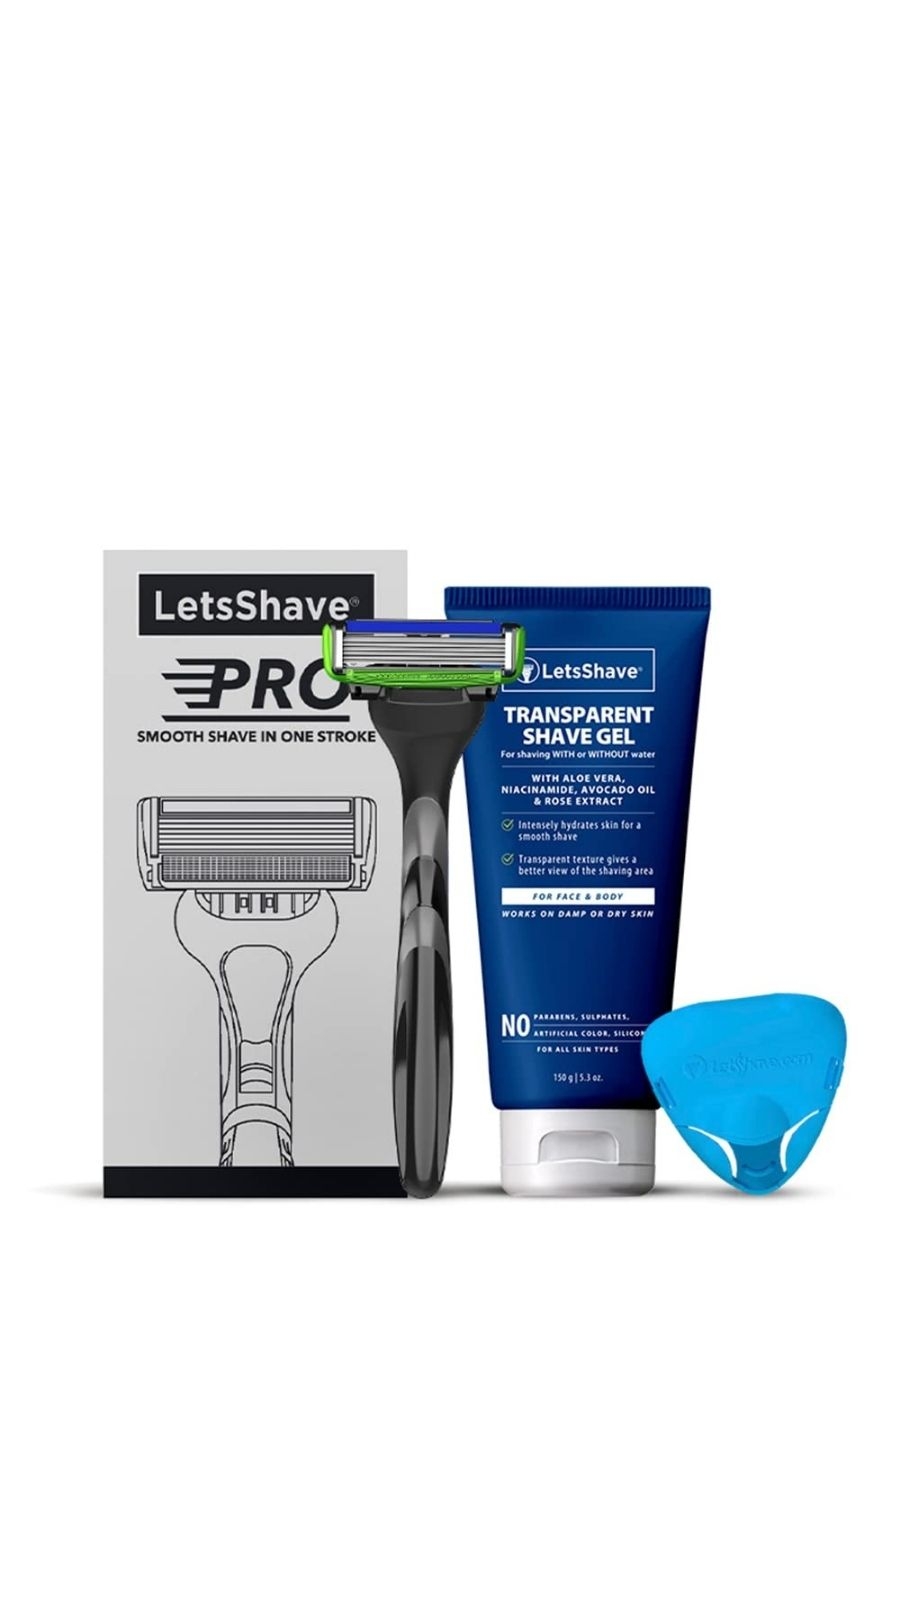 LetsShave | LetsShave Pro 6 Sensitive Razor Trial Kit for Men - Pro 6 Sensitive Blade + Razor Handle + Shave Gel